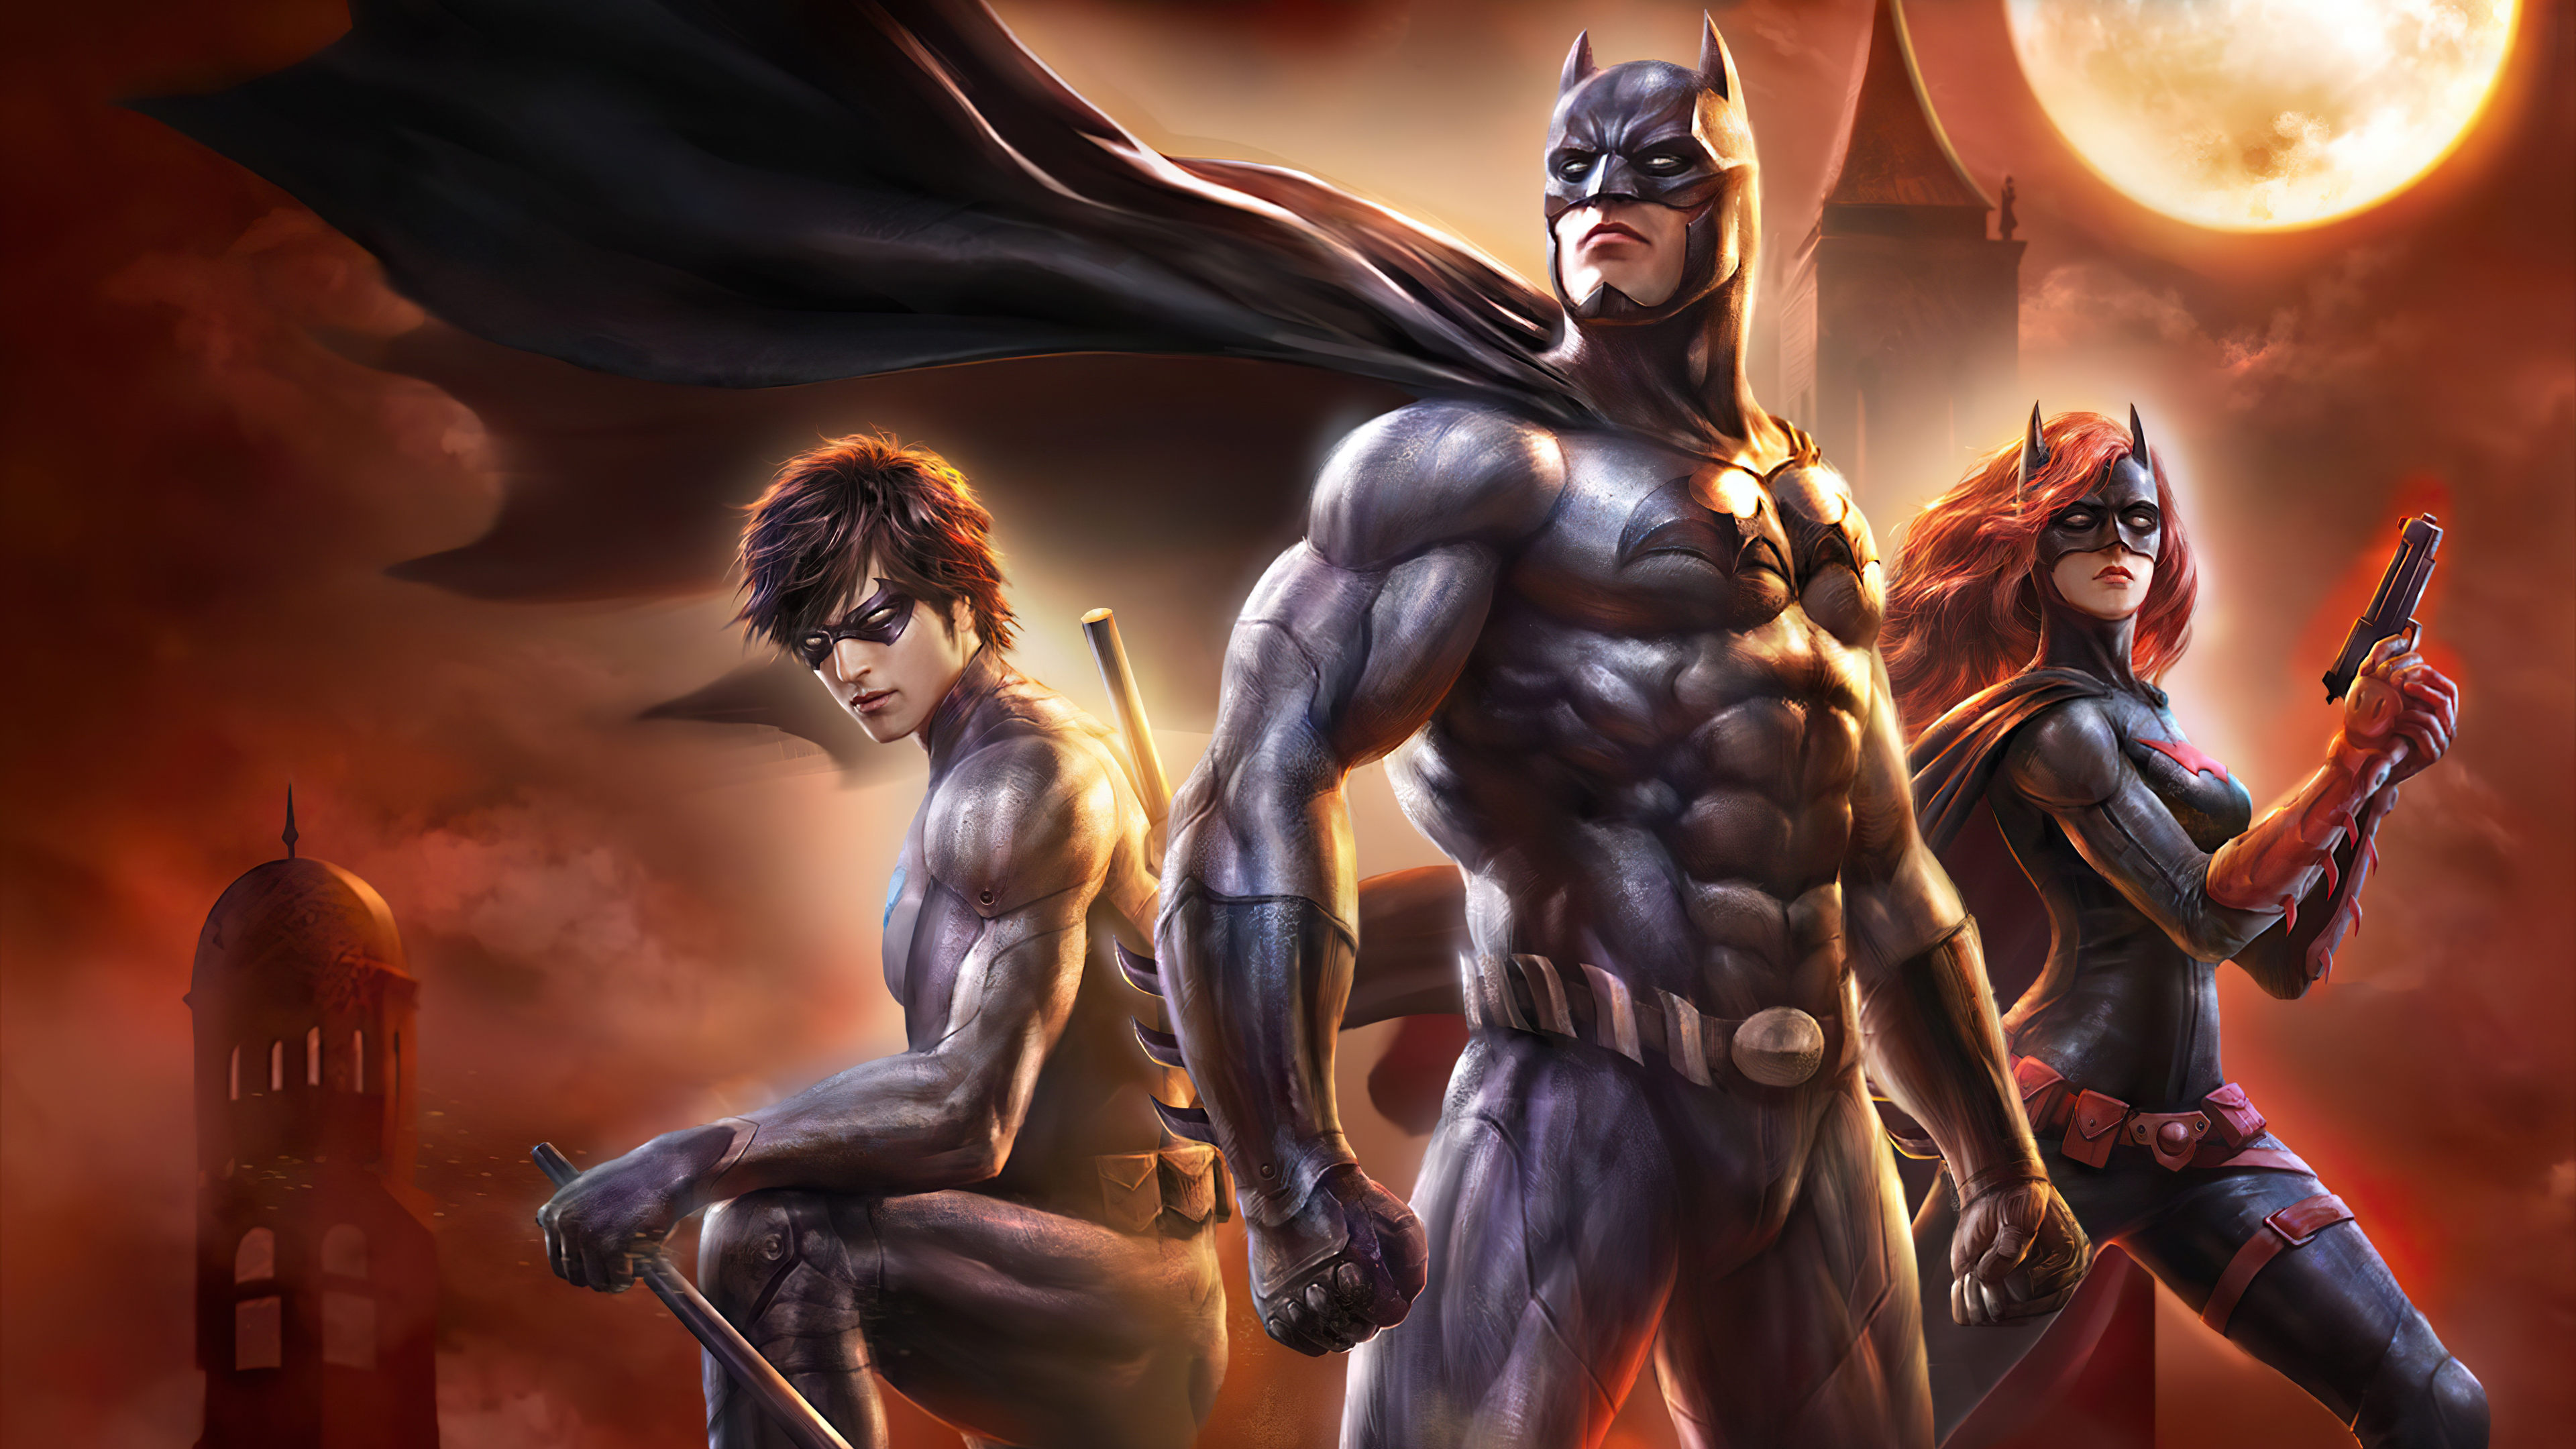 Batman Batwoman DC Comics and Kate Kane 4k Ultra HD Wallpaper